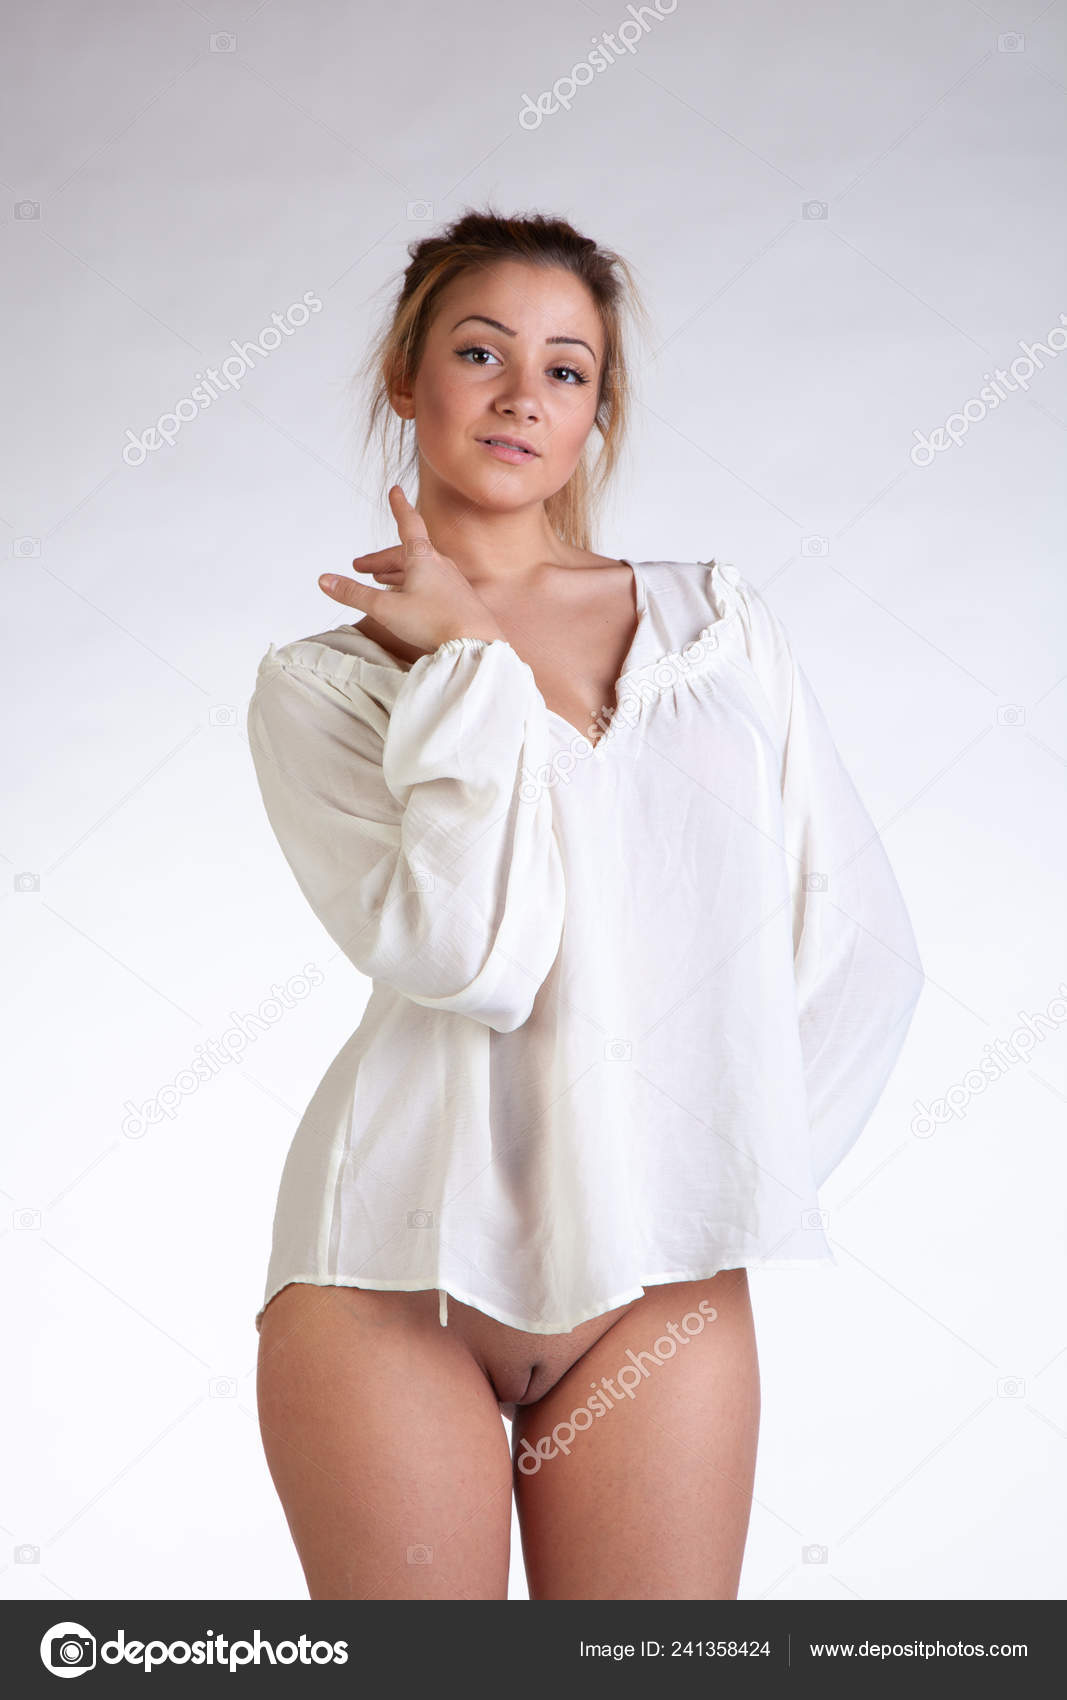 https://st4n.depositphotos.com/10086424/24135/i/1600/depositphotos_241358424-stock-photo-young-beautiful-girl-posing-nude.jpg